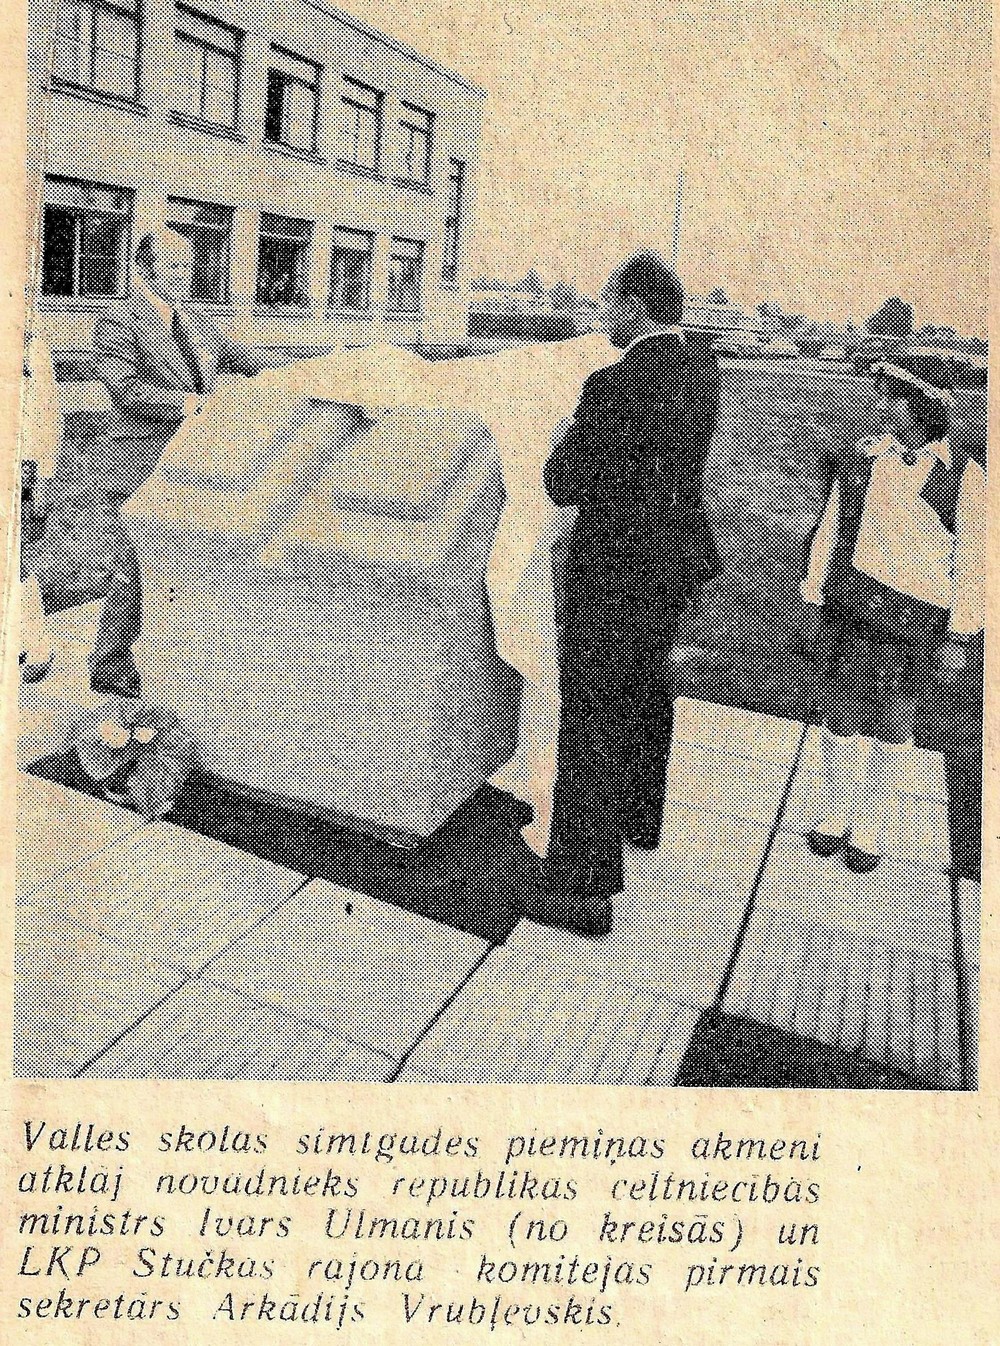 Valles skolas piemiņas akmens atklāšana 25. maijā 1979. gadā